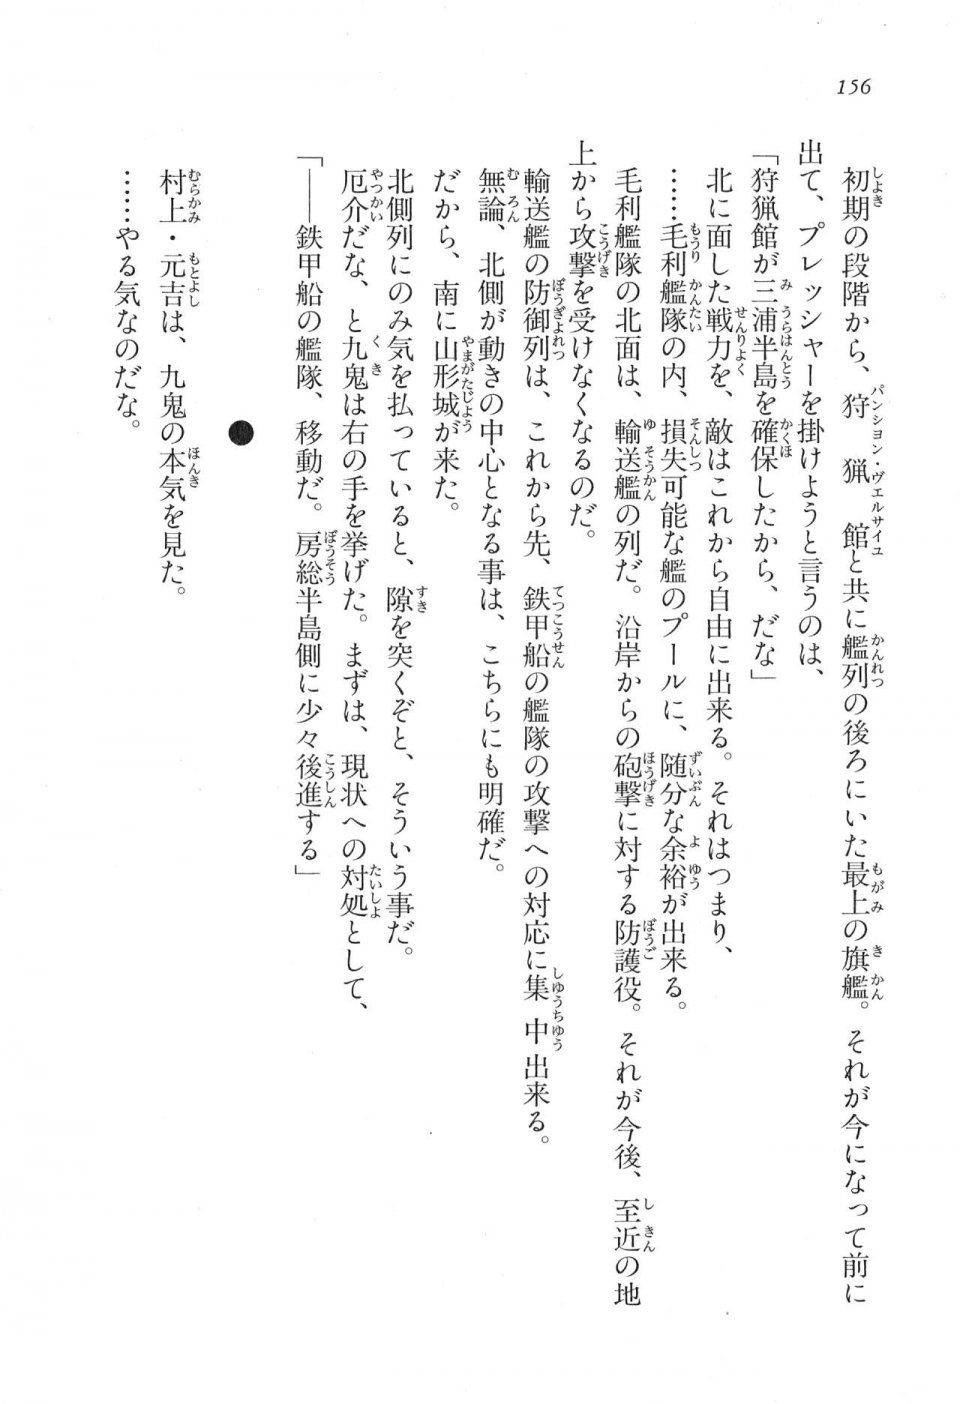 Kyoukai Senjou no Horizon LN Vol 17(7B) - Photo #156